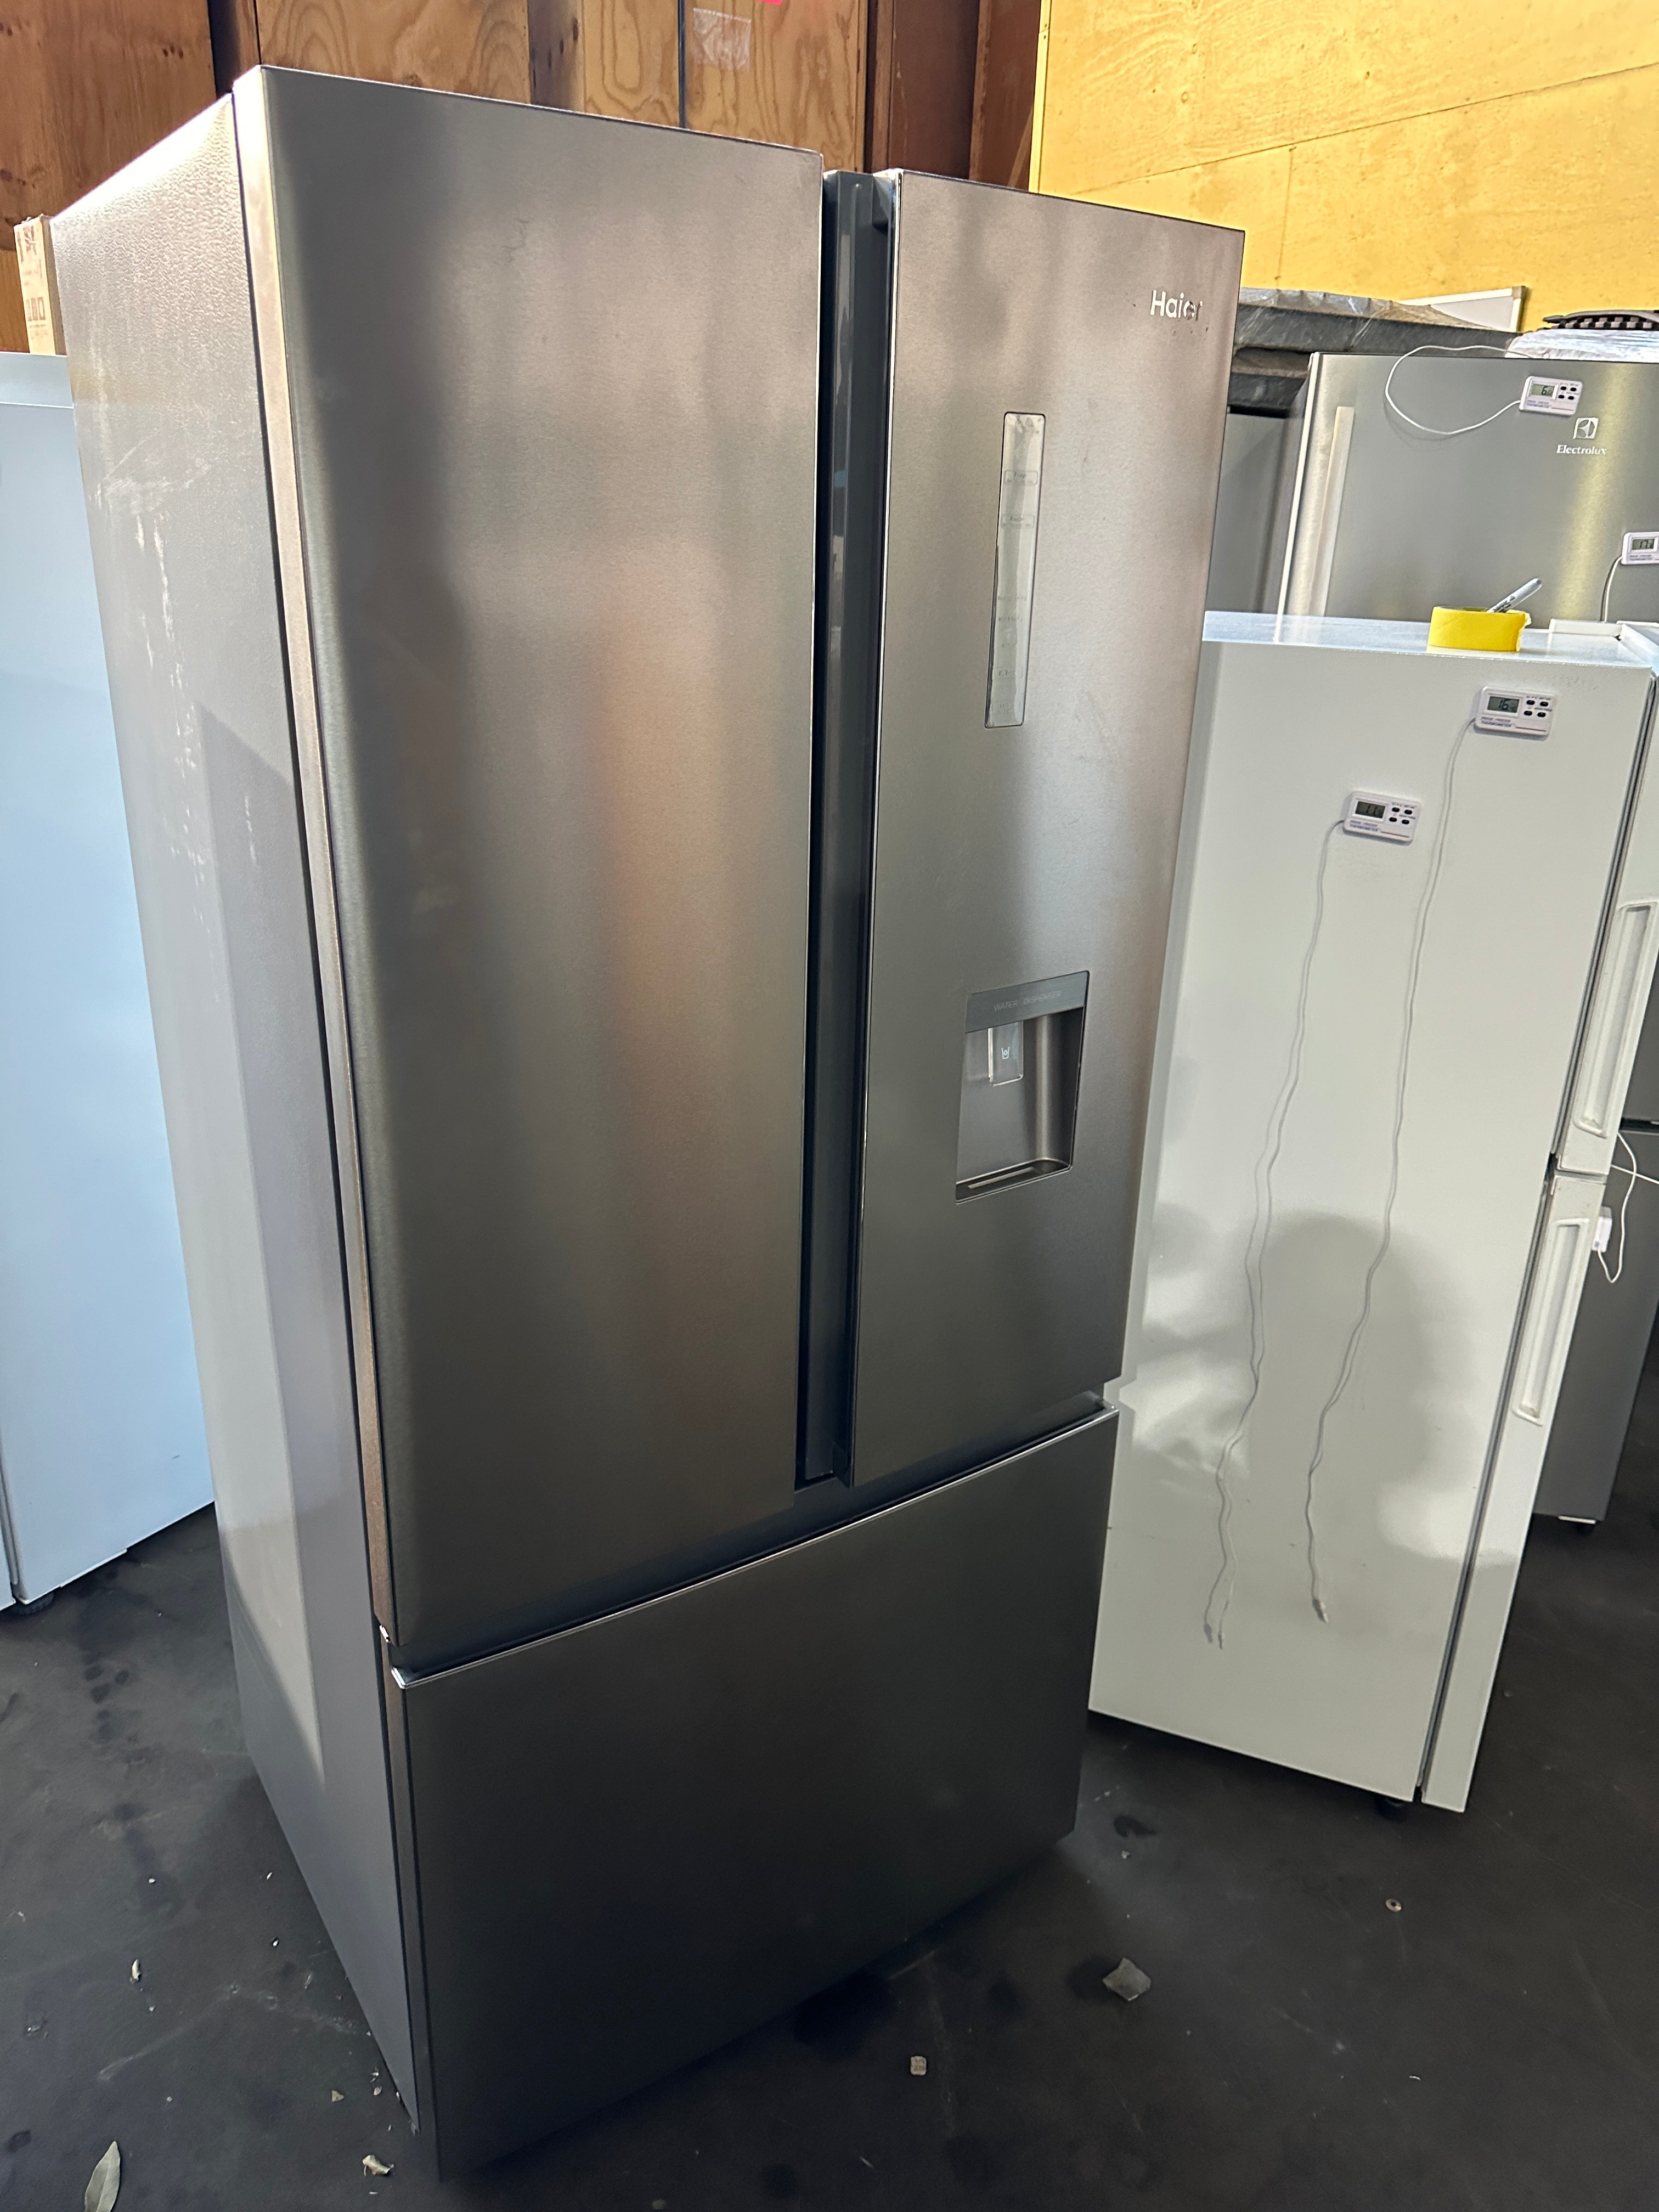 HRF520FS Haier 492 L French Door Refrigerator